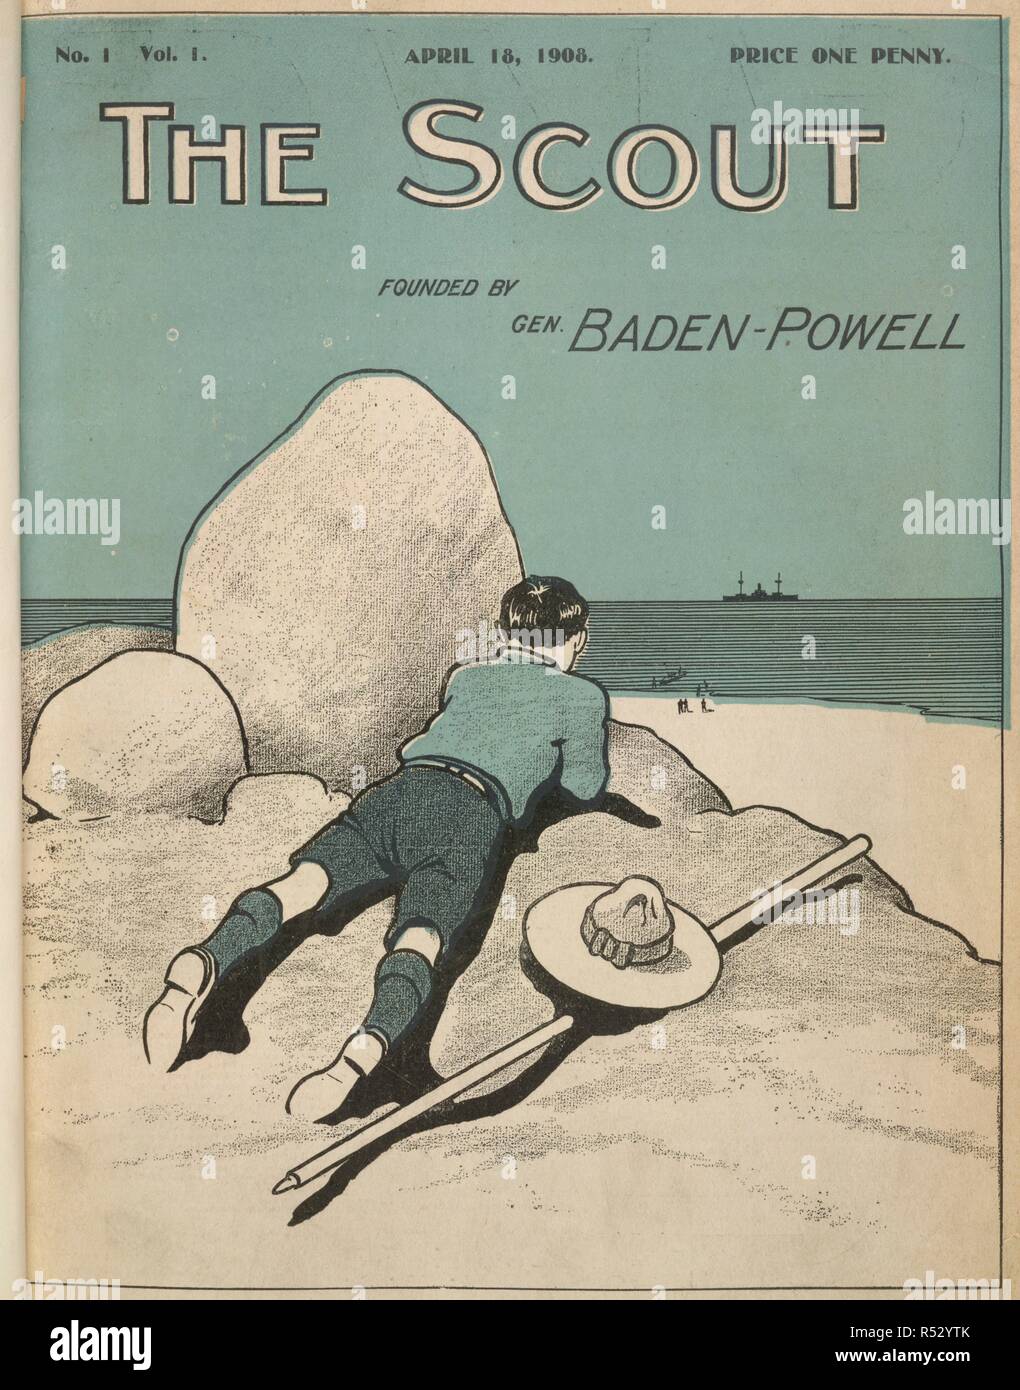 Colore coperchio illustrato mostra un boy scout la visione di una nave all'orizzonte. La Scout. Londra, Inghilterra: 18 aprile 1908. Fonte: Lo Scout no.1, vol.1. Foto Stock